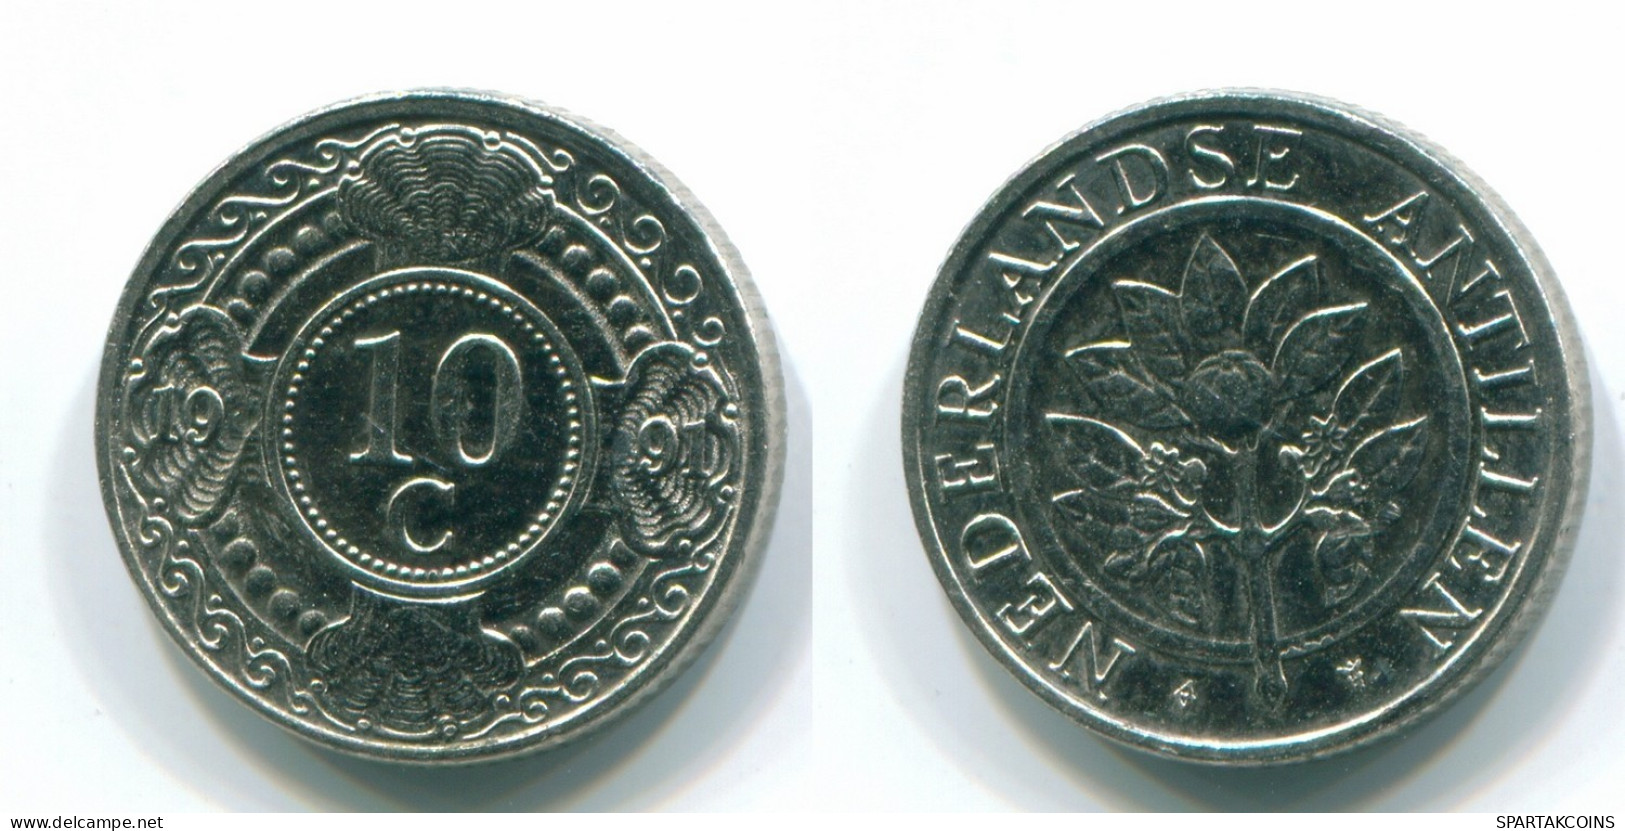 10 CENTS 1991 NIEDERLÄNDISCHE ANTILLEN Nickel Koloniale Münze #S11325.D.A - Niederländische Antillen